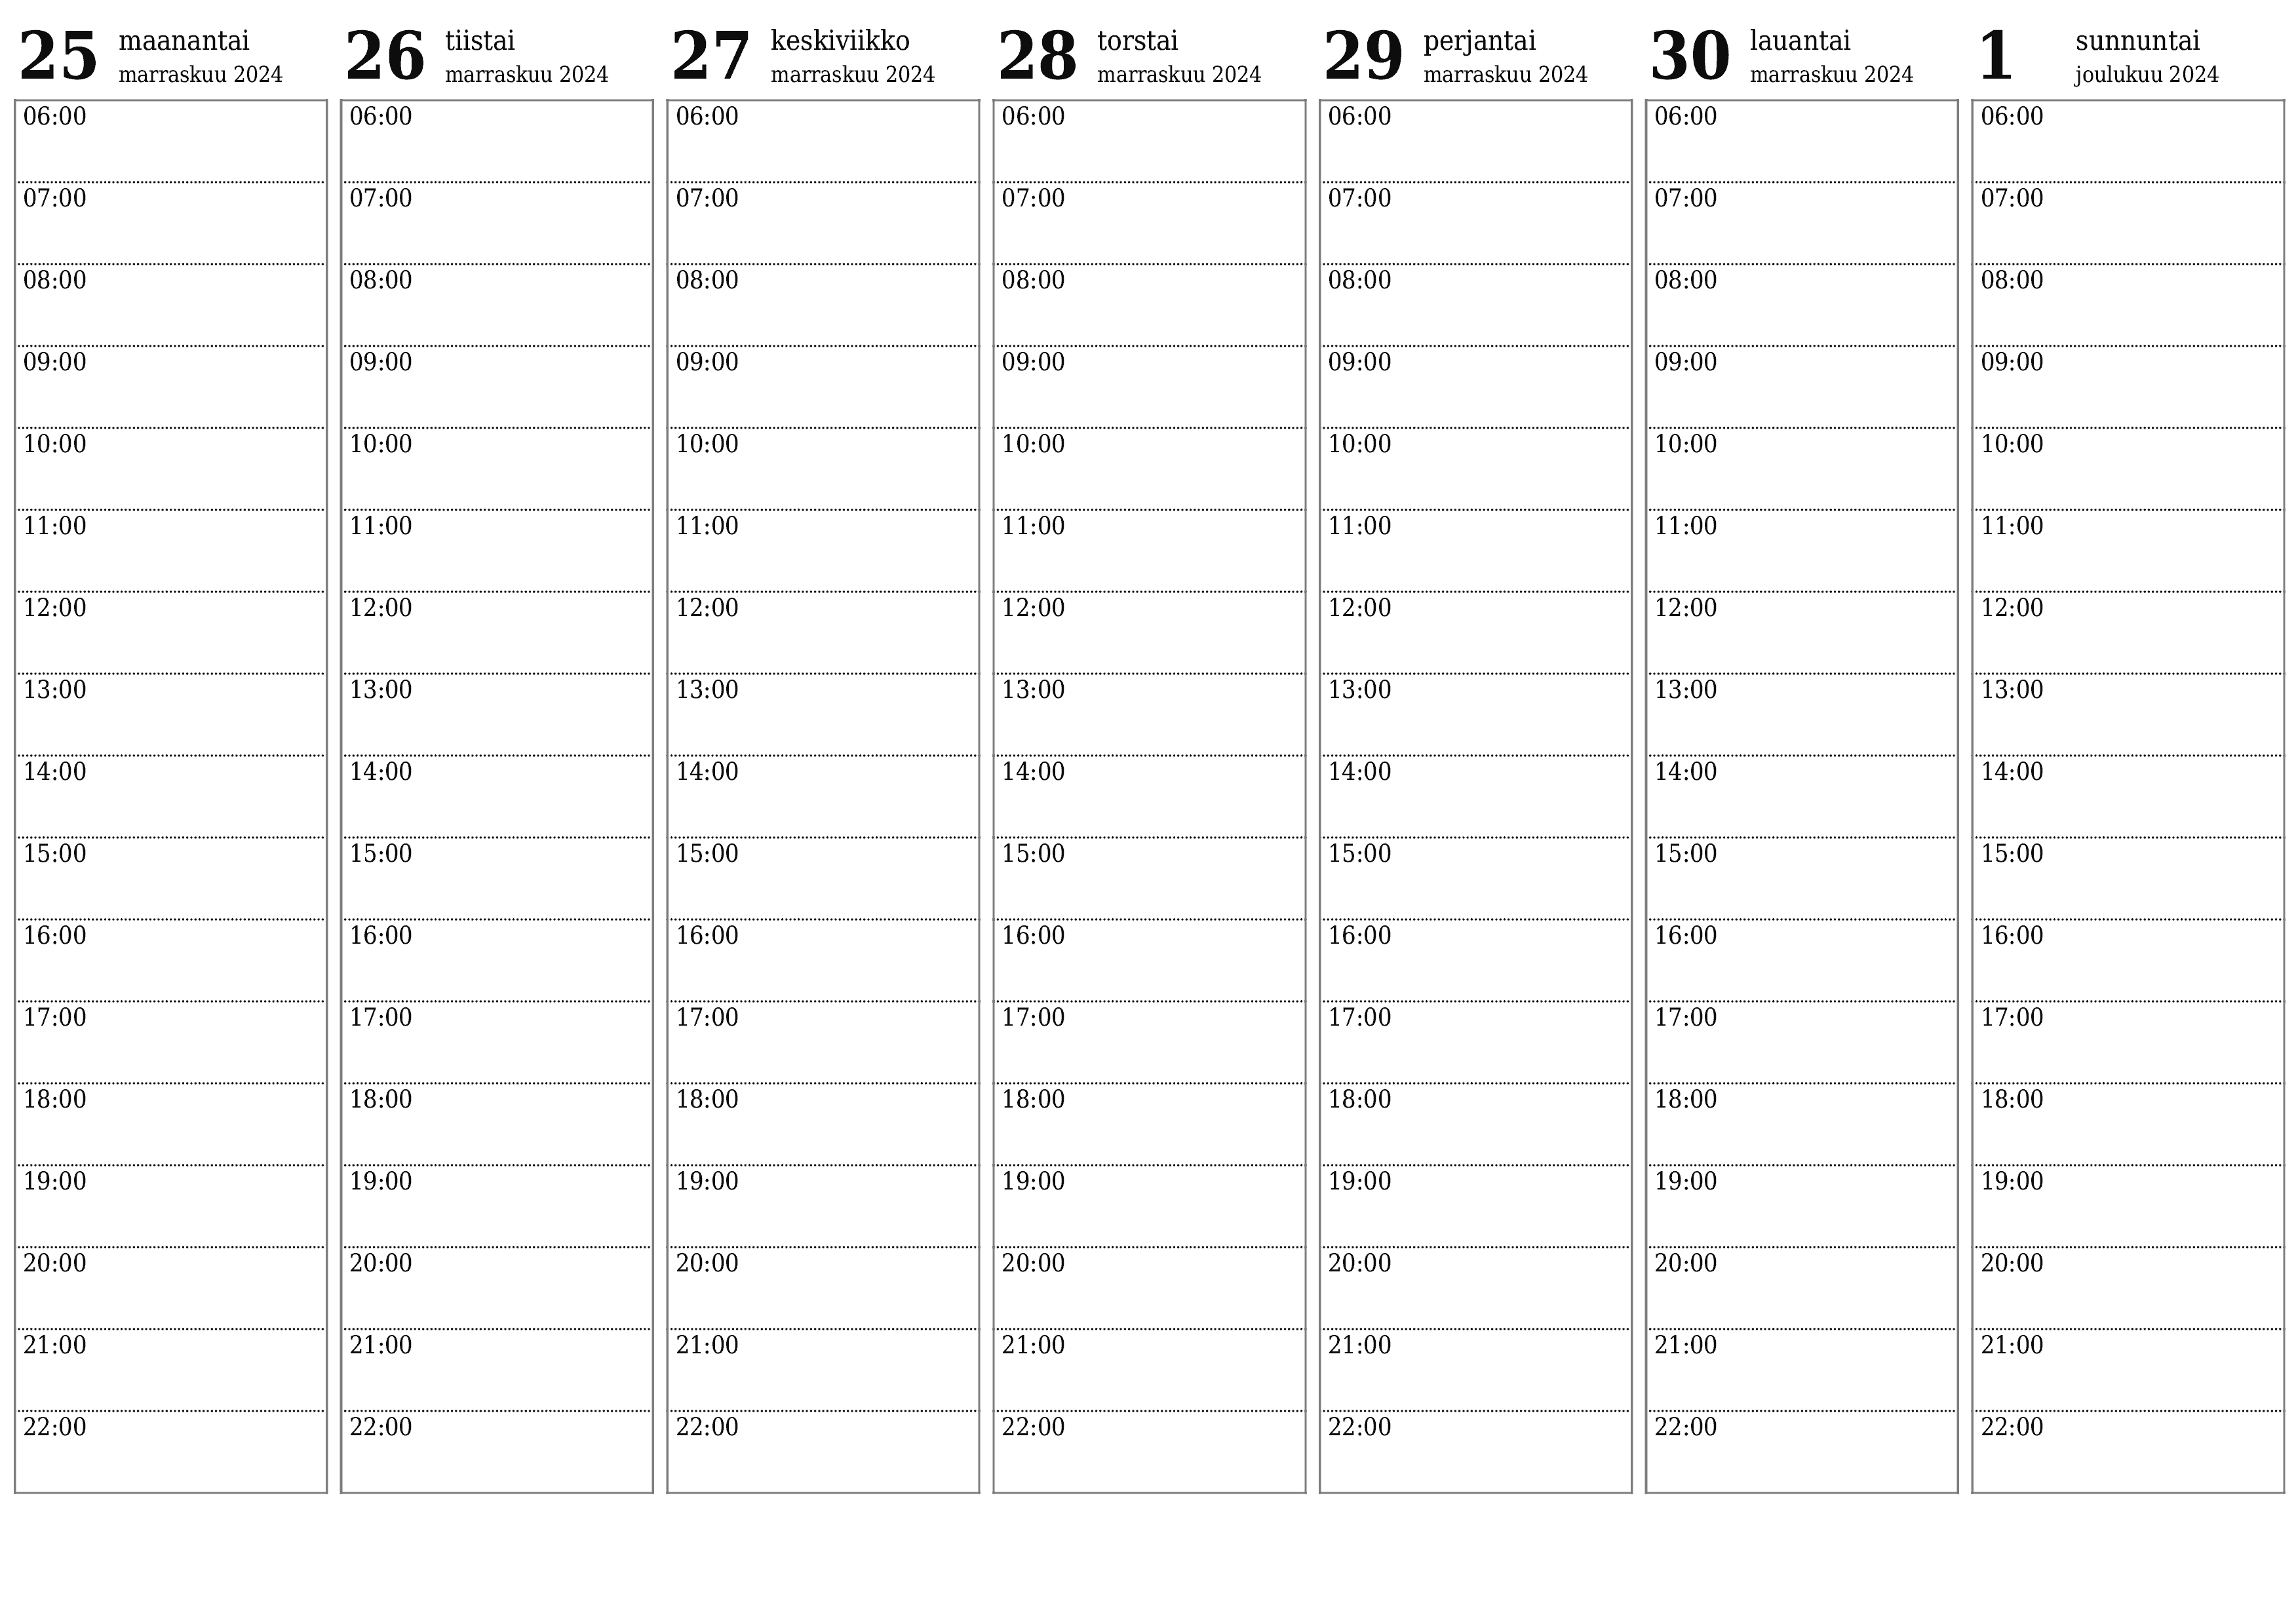 Tyhjennä viikkosuunnittelija viikkojen ajan joulukuu 2024 muistiinpanoilla, tallenna ja tulosta PDF-muotoon PNG Finnish